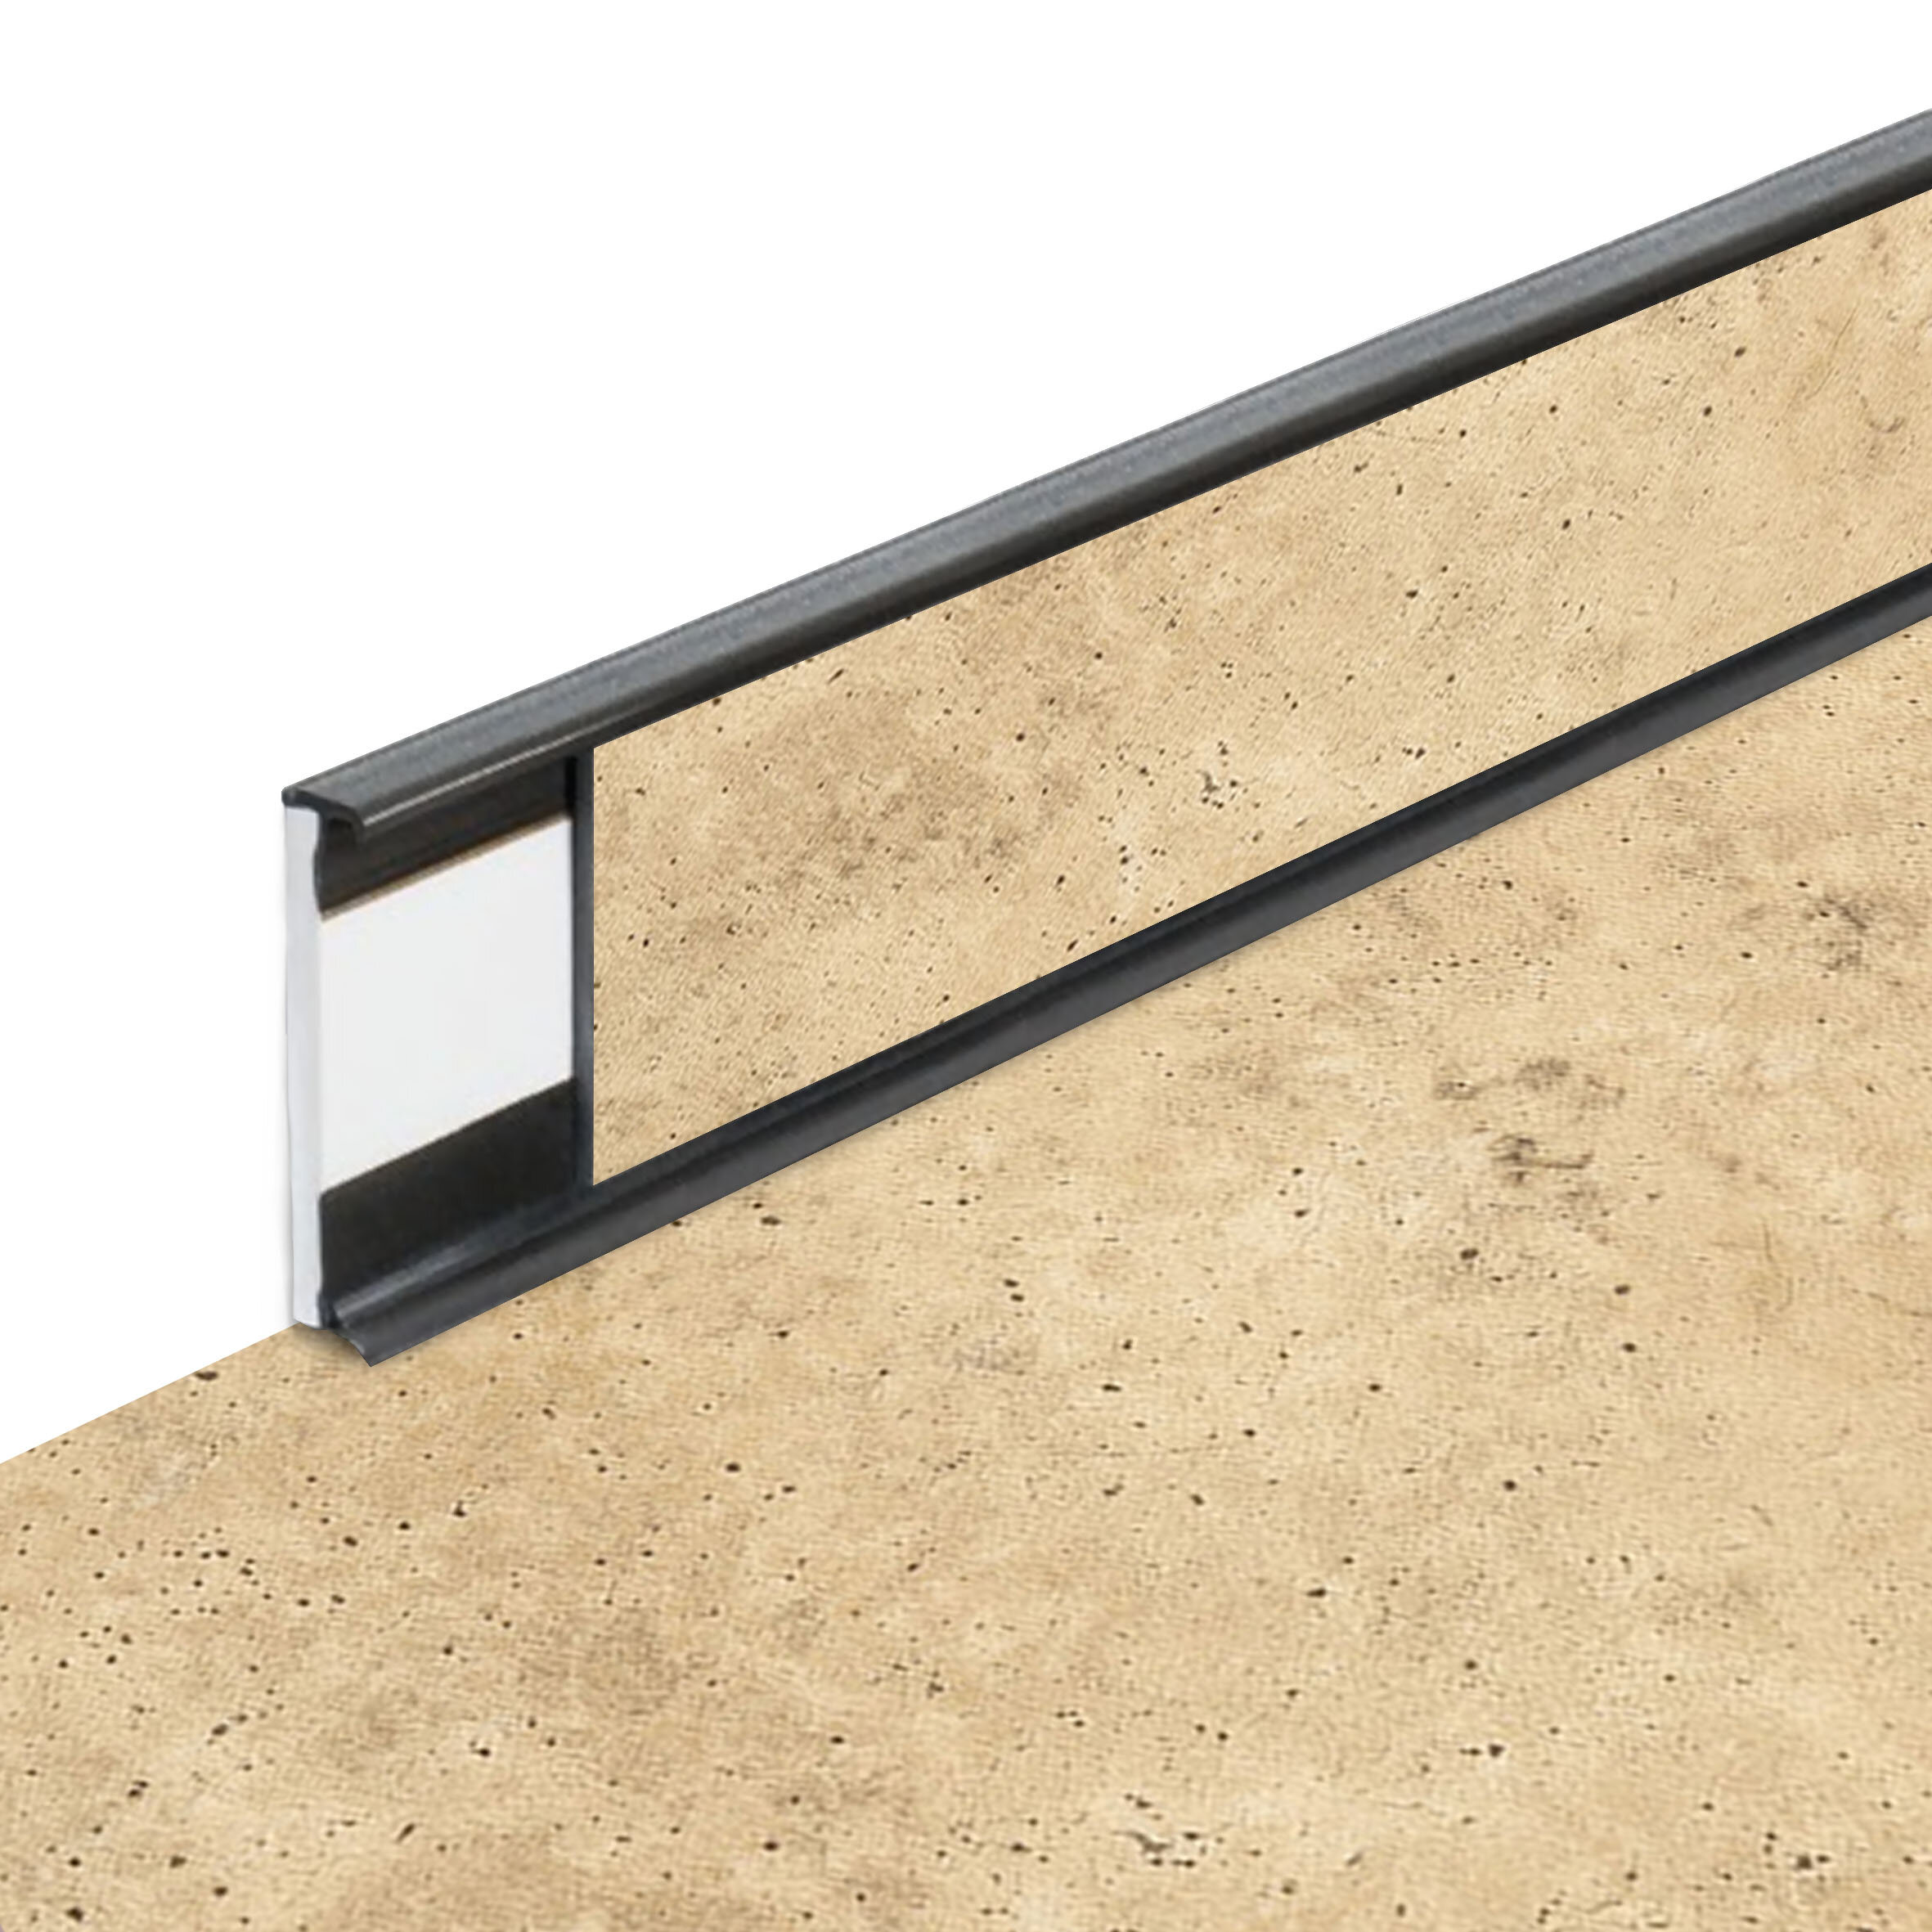 PVC vinylová soklová podlahová lišta Fortelock Business Tornes Saturn C011 Graphite - délka 200 cm, výška 5,8 cm, tloušťka 1,2 cm